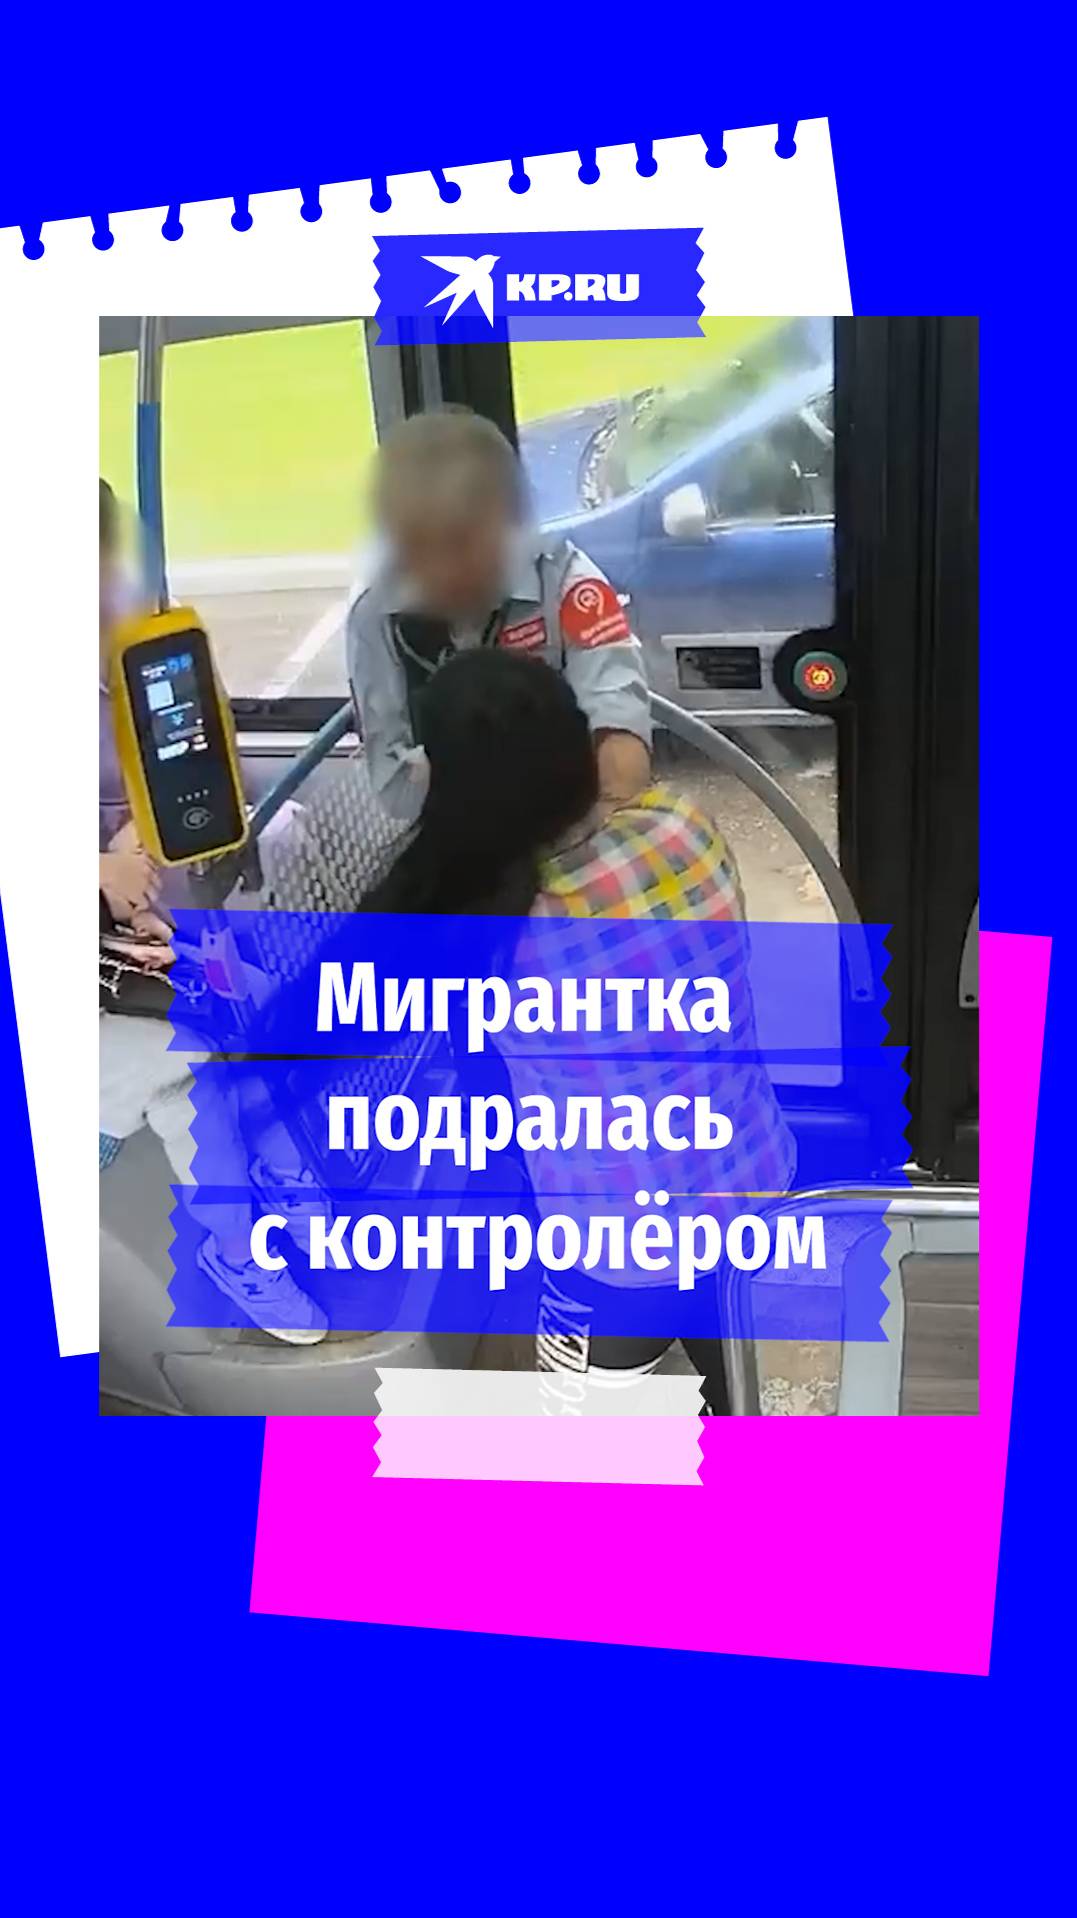 Женщина напала на контролёра в московском автобусе